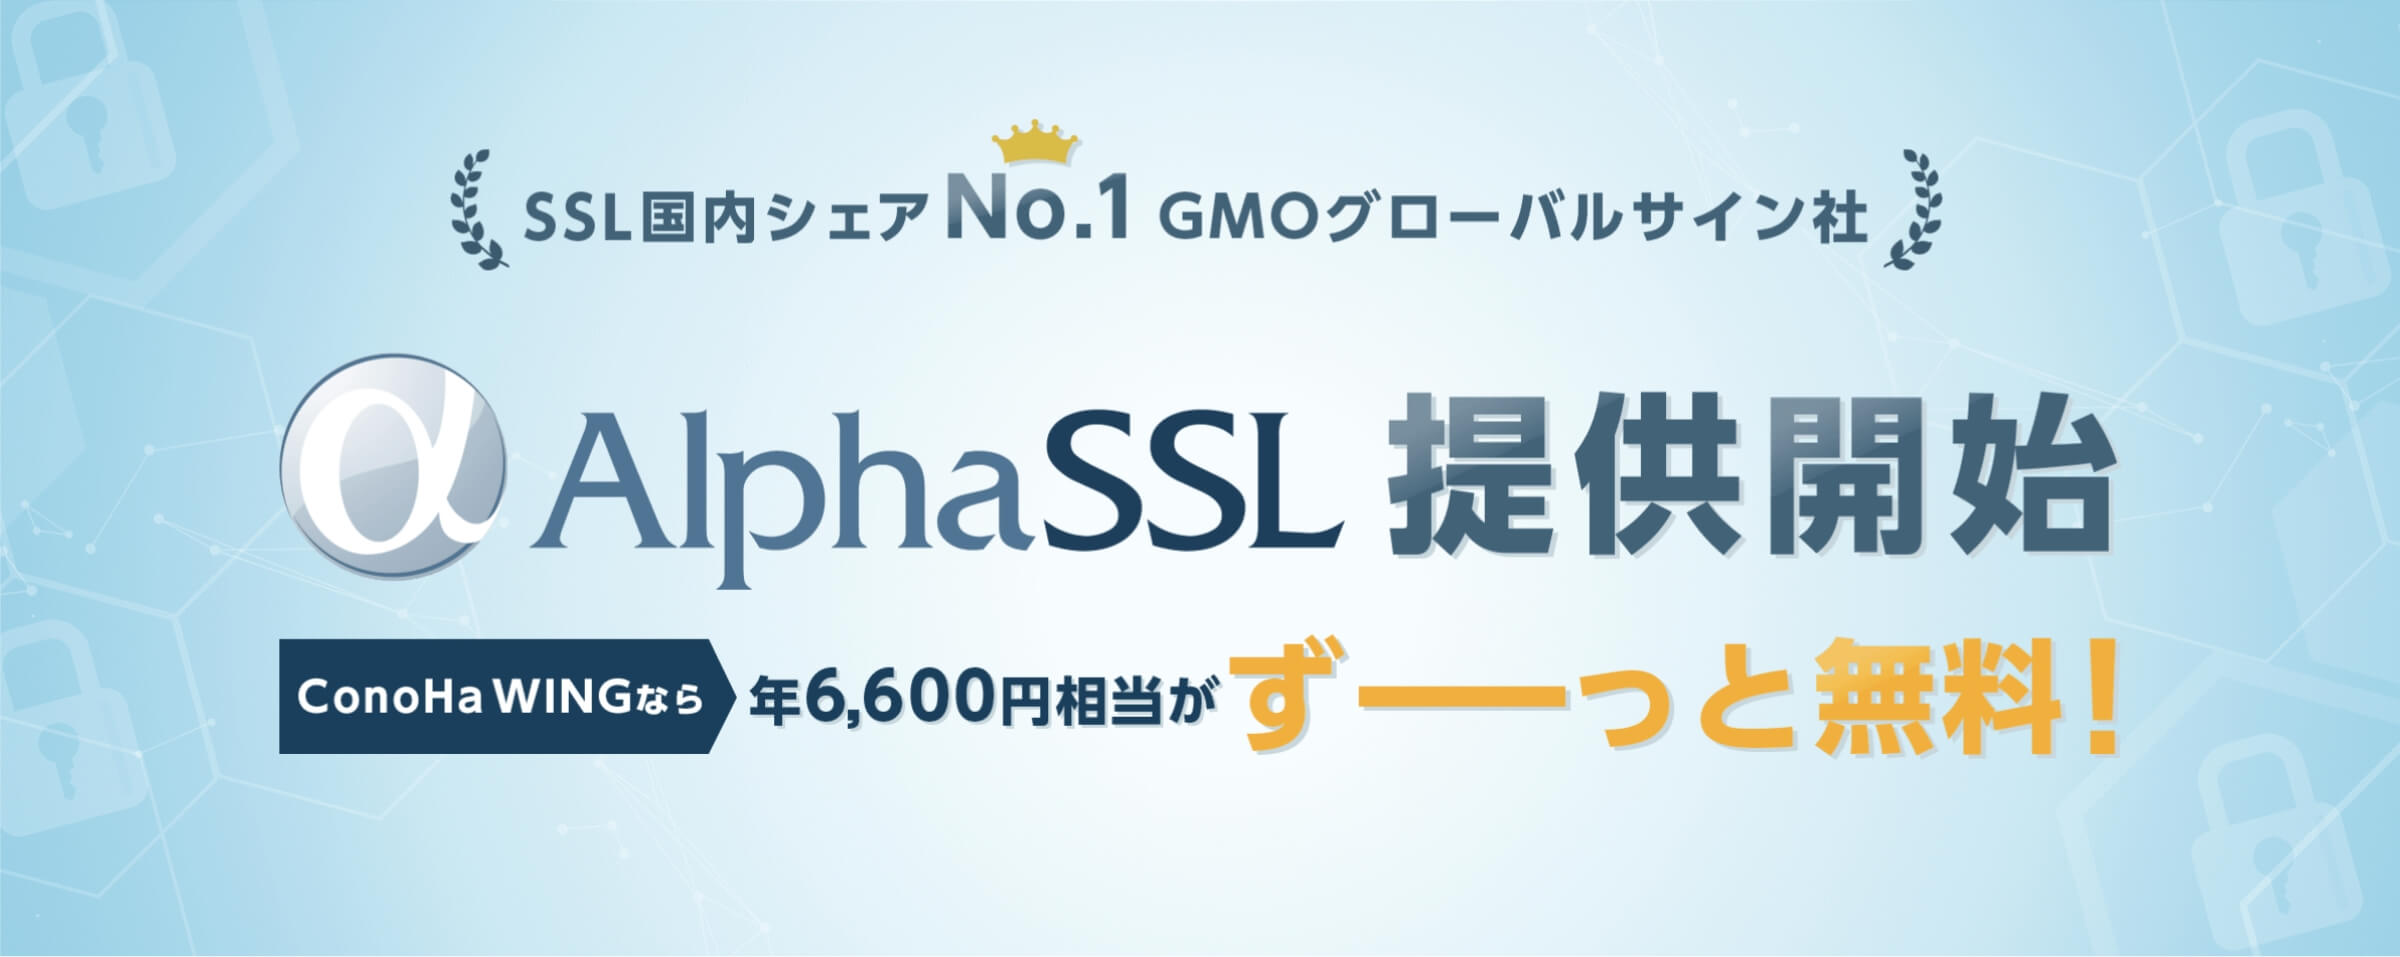 自動設定の独自SSL(Let's Encrypt)からアルファSSLに設定変更する方法